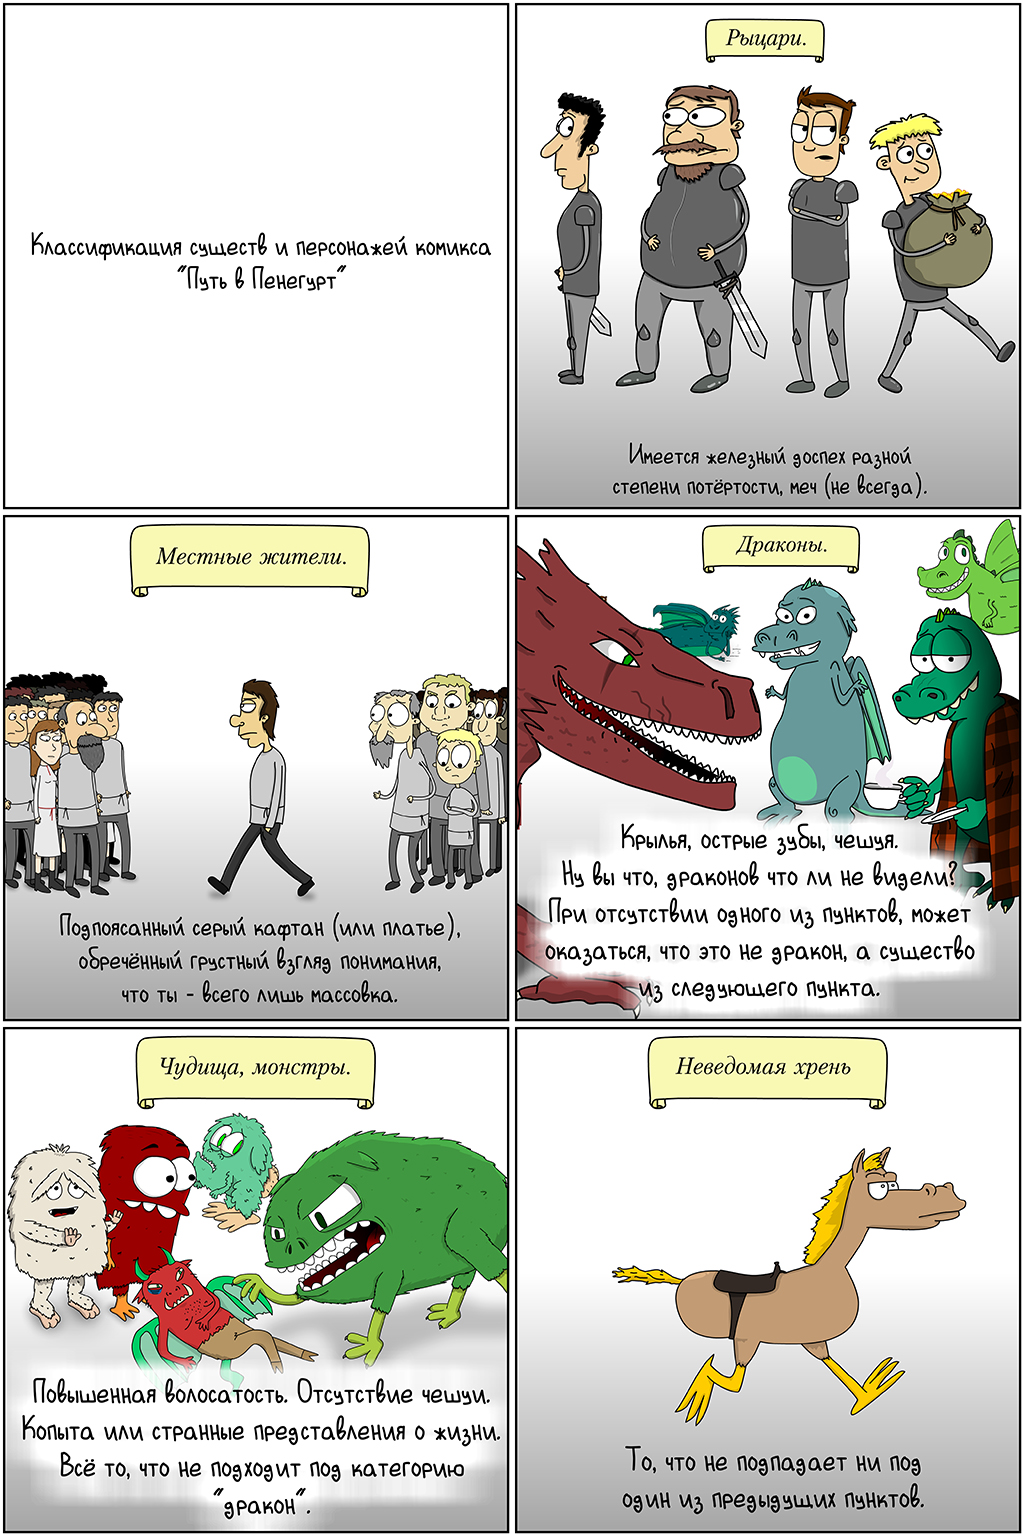 Классификация существ и персонажей комикса "Путь в Пенегурт"